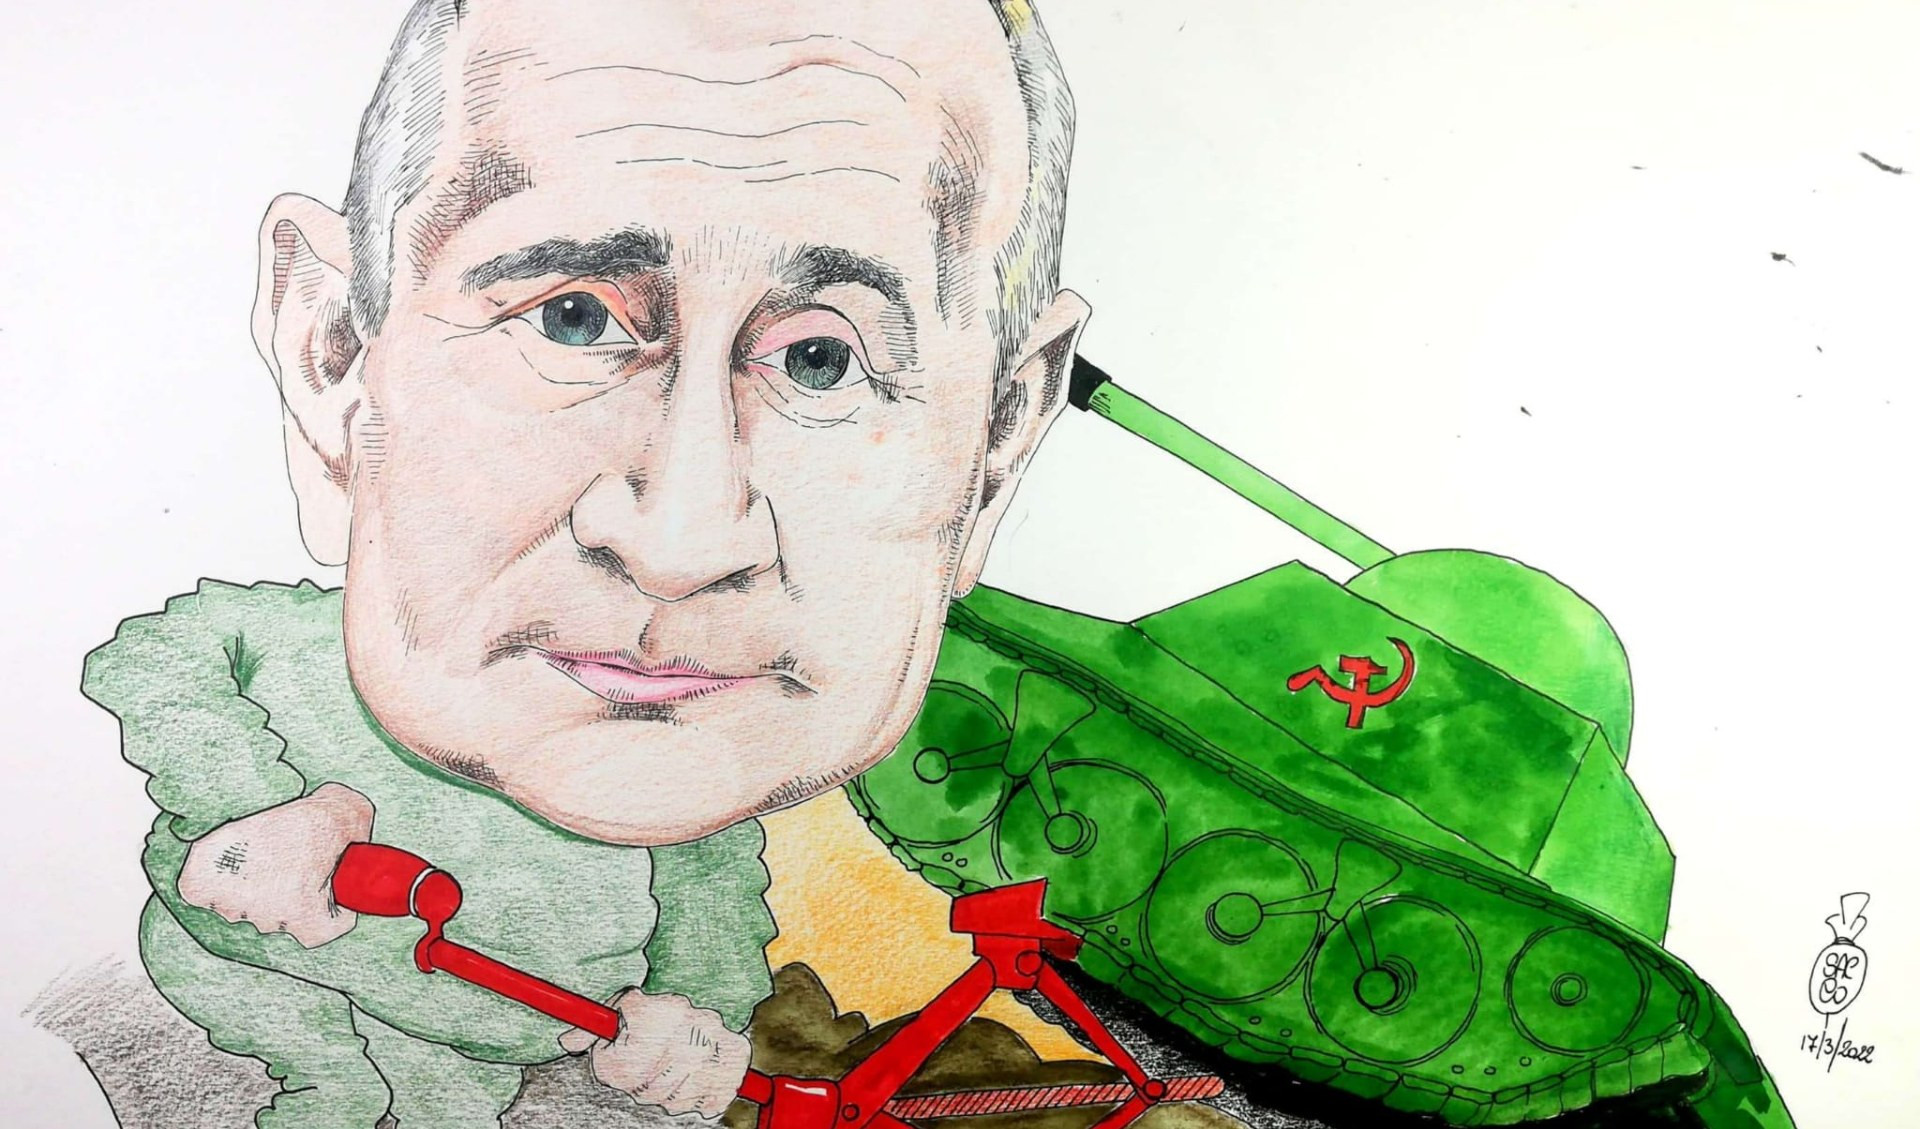 Le Mussaie di Davide Sacco: la guerra di Putin